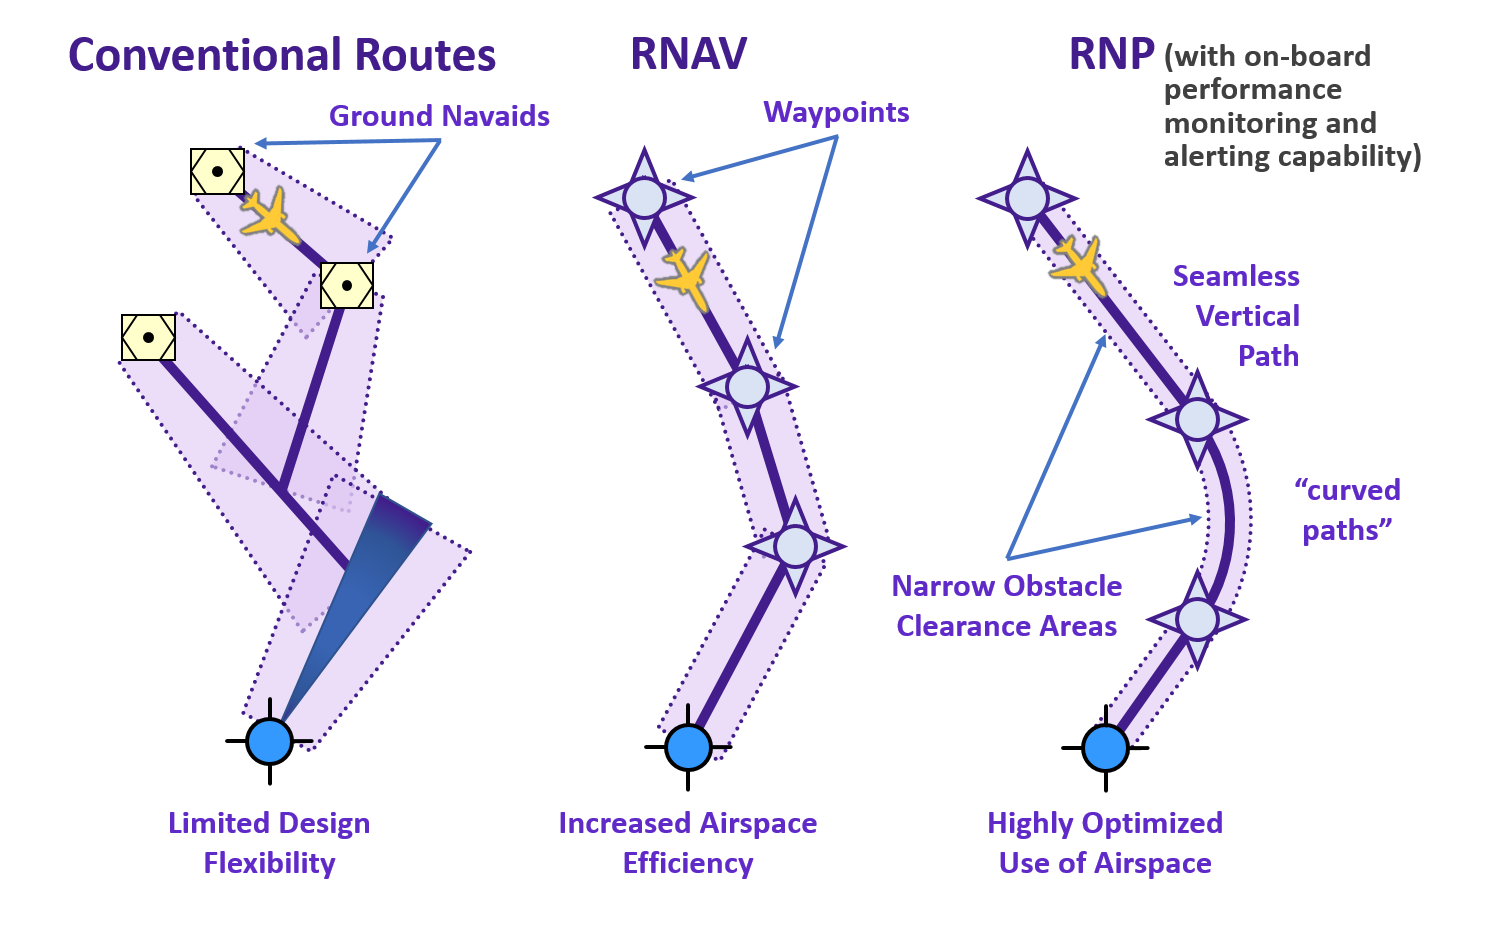 RNAV and RNP